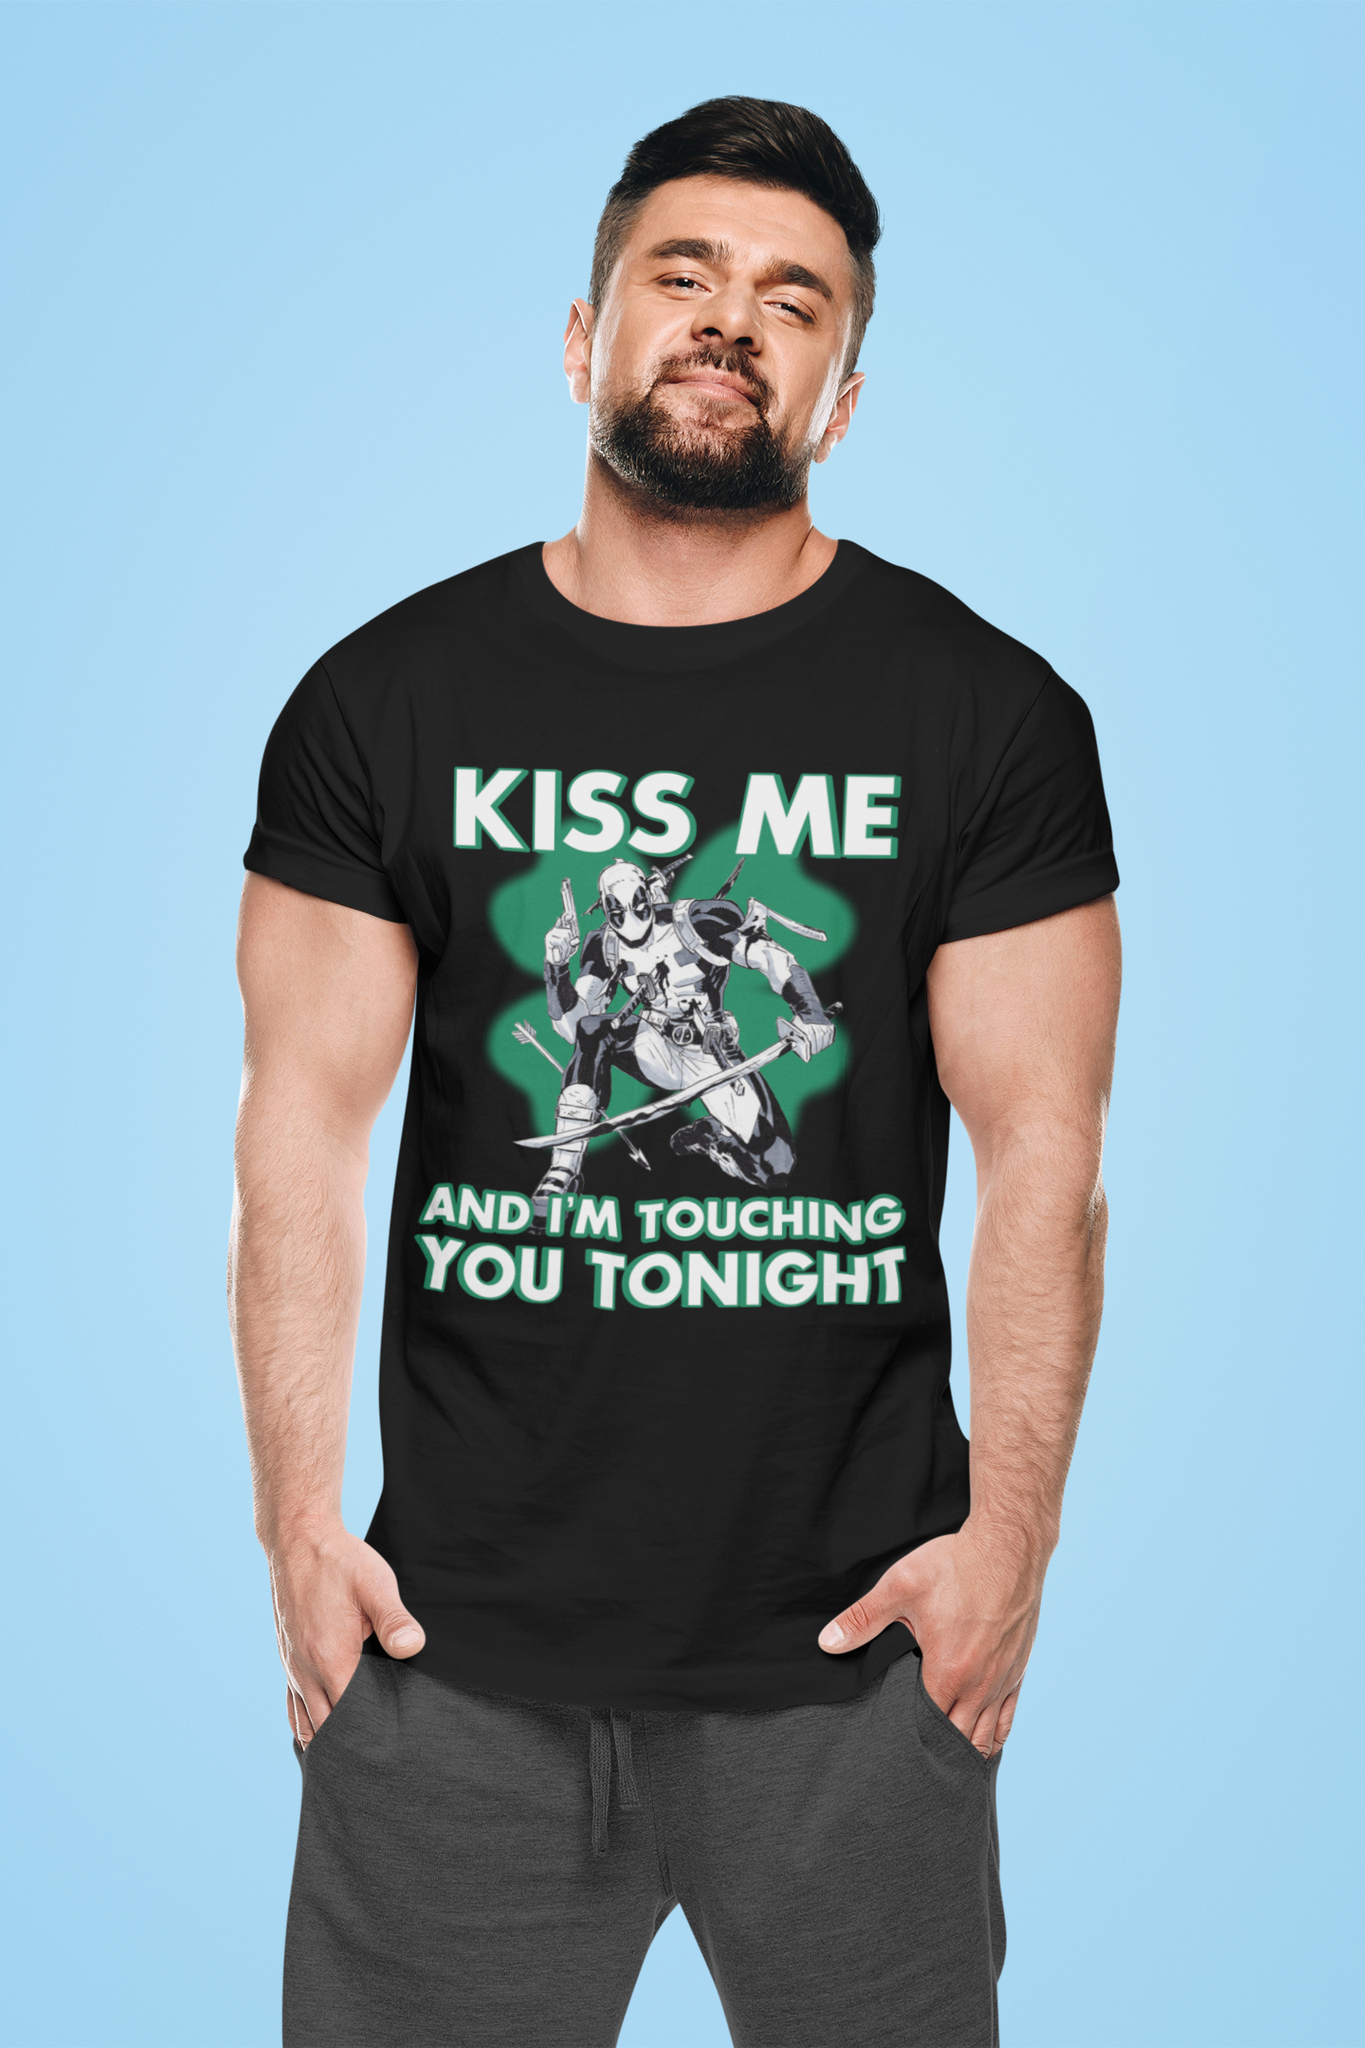 Deadpool T Shirt, Superhero Deadpool T Shirt, Kiss Me Im Touching You Tonight Tshirt